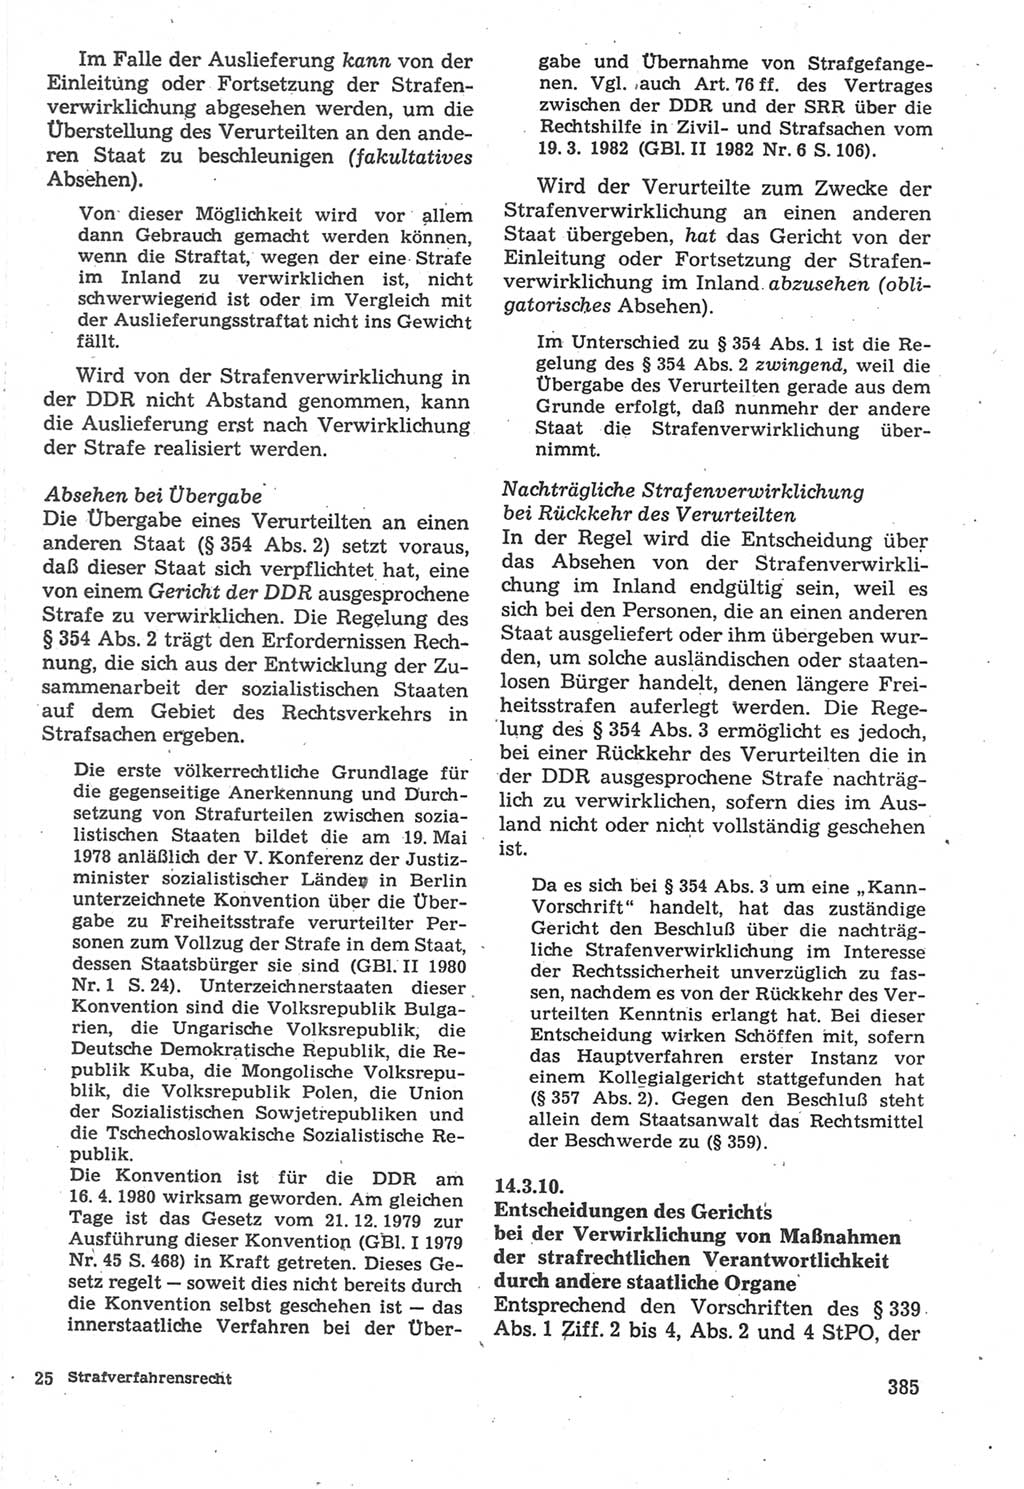 Strafverfahrensrecht [Deutsche Demokratische Republik (DDR)], Lehrbuch 1987, Seite 385 (Strafverf.-R. DDR Lb. 1987, S. 385)